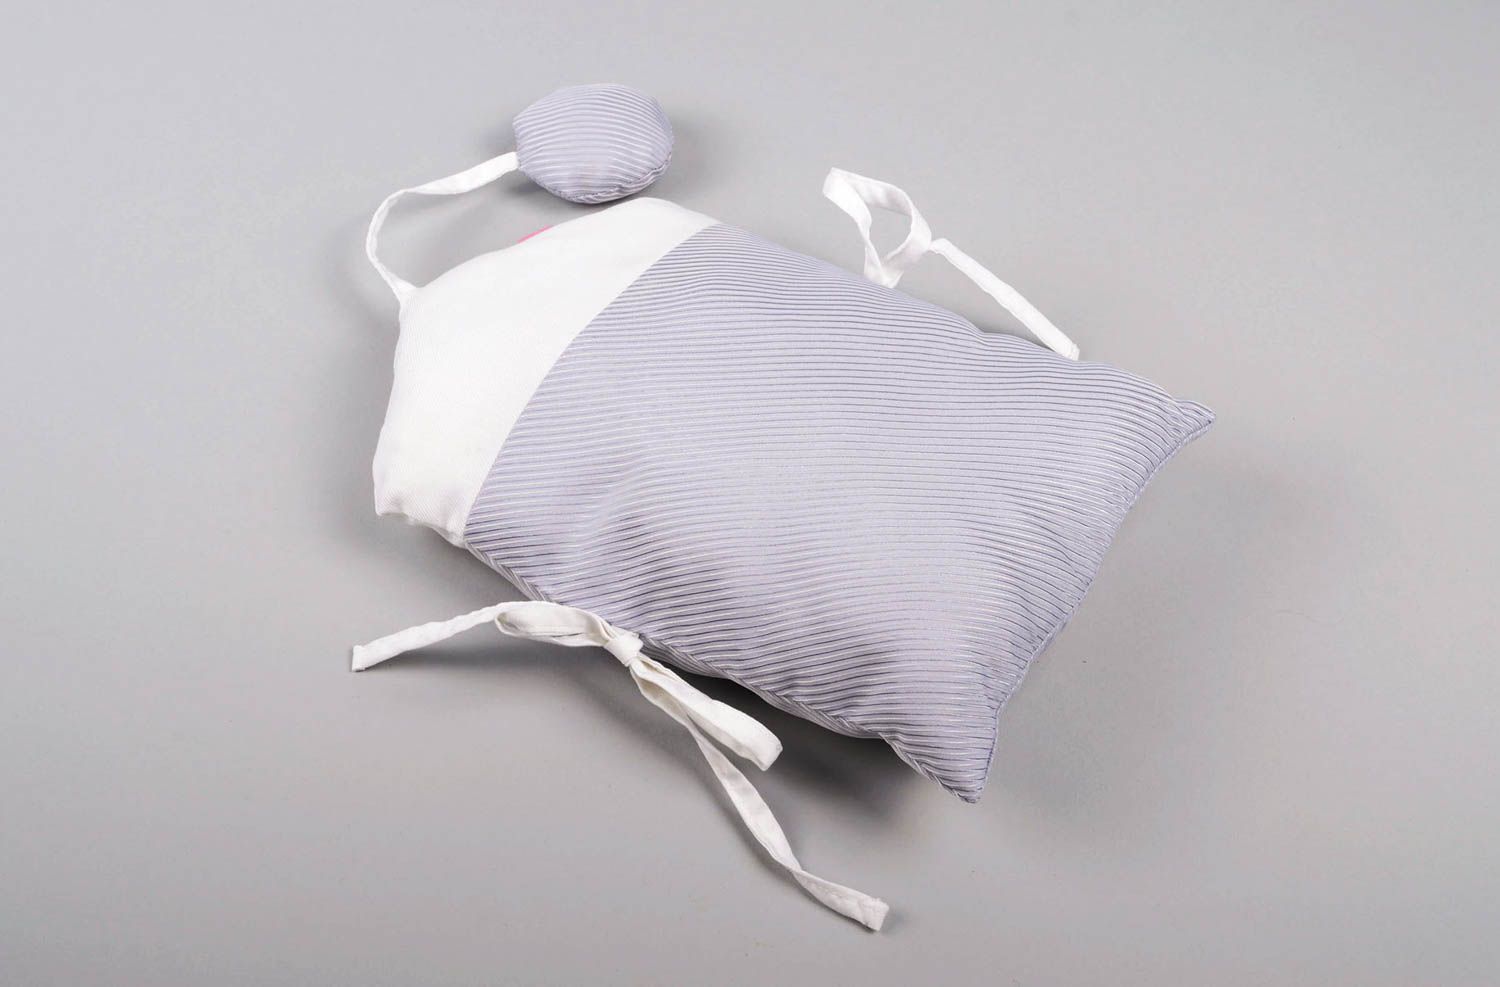 Handmade Bett Kopfschutz Baby Nestchen für Babybett exklusiv Nestchen Haus   foto 3